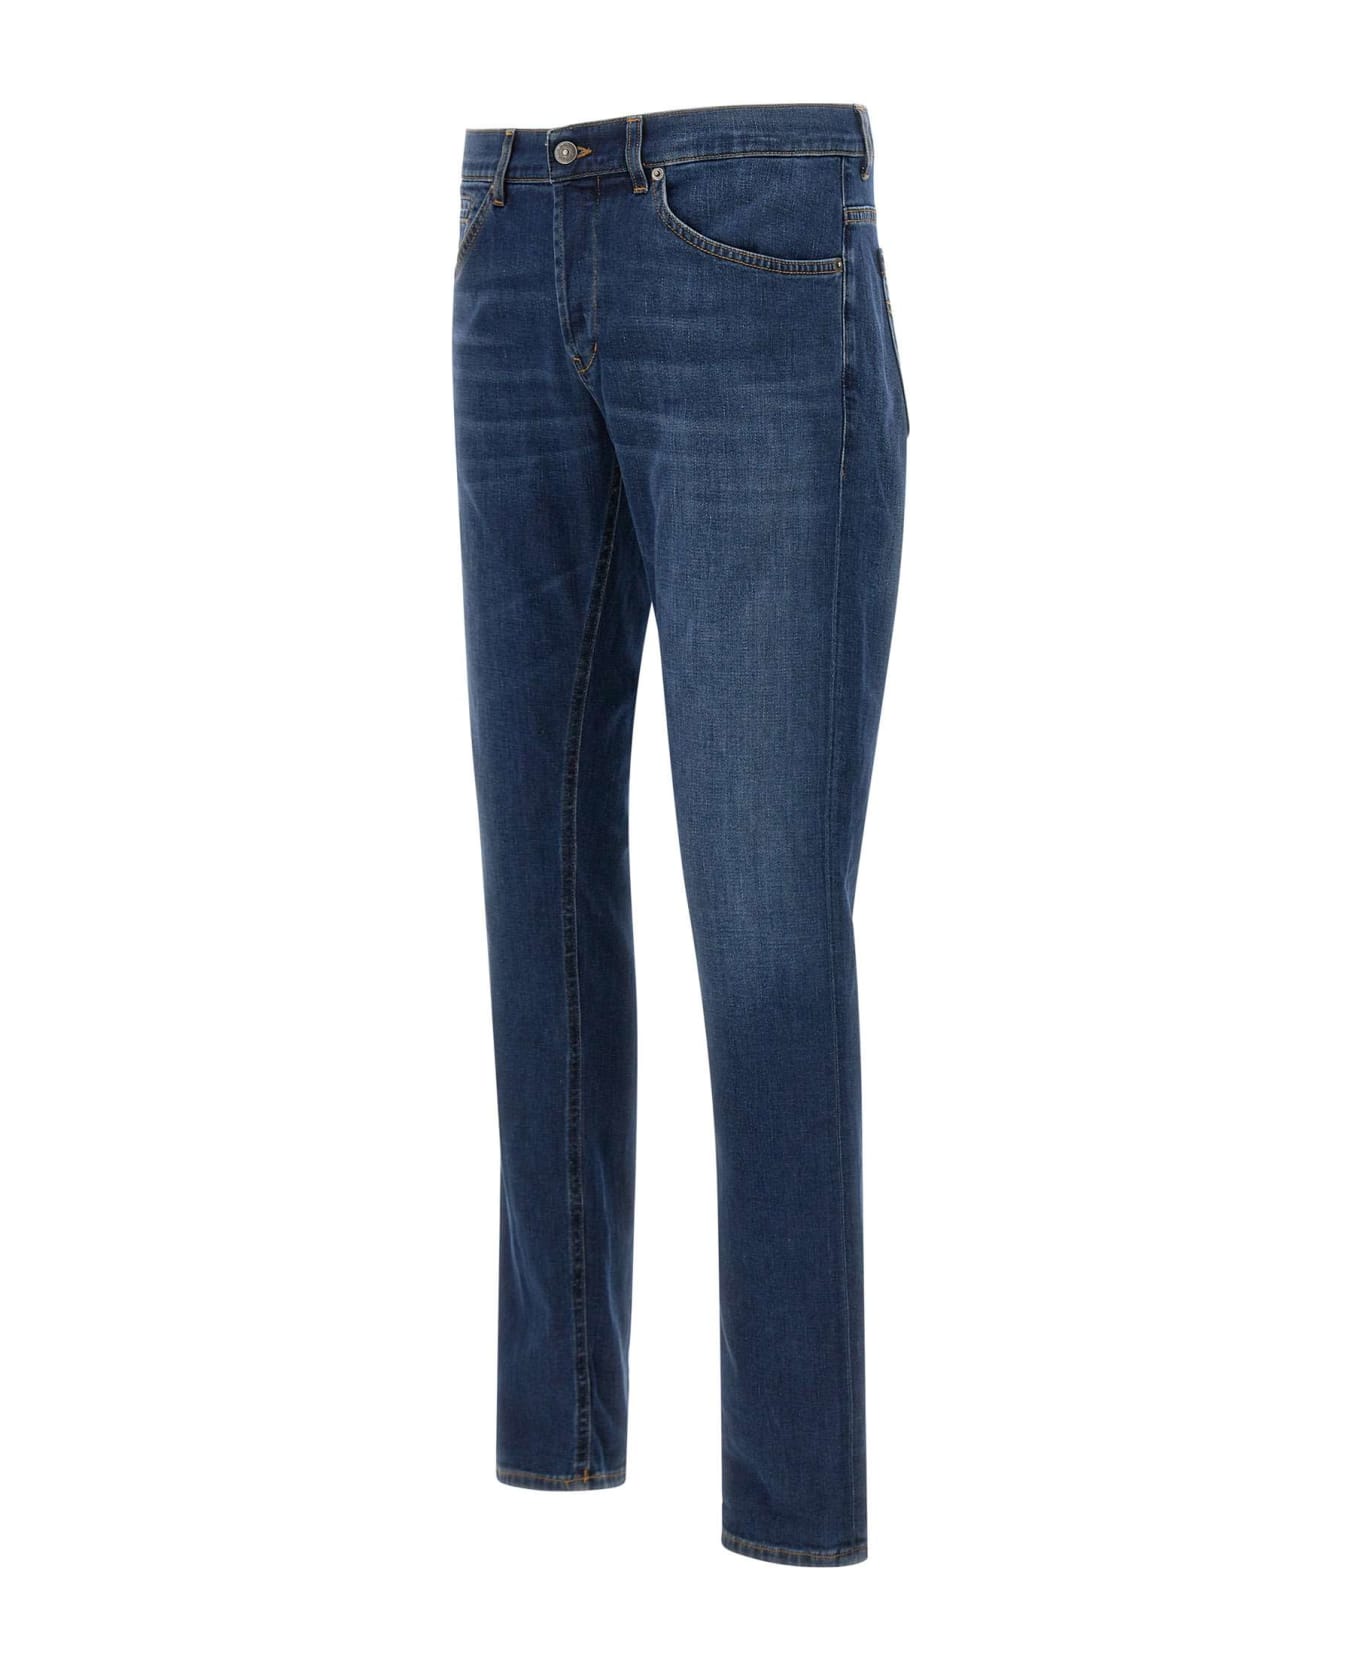 Dondup George Skinny Fit Jeans In Blue Stretch Denim - Blue